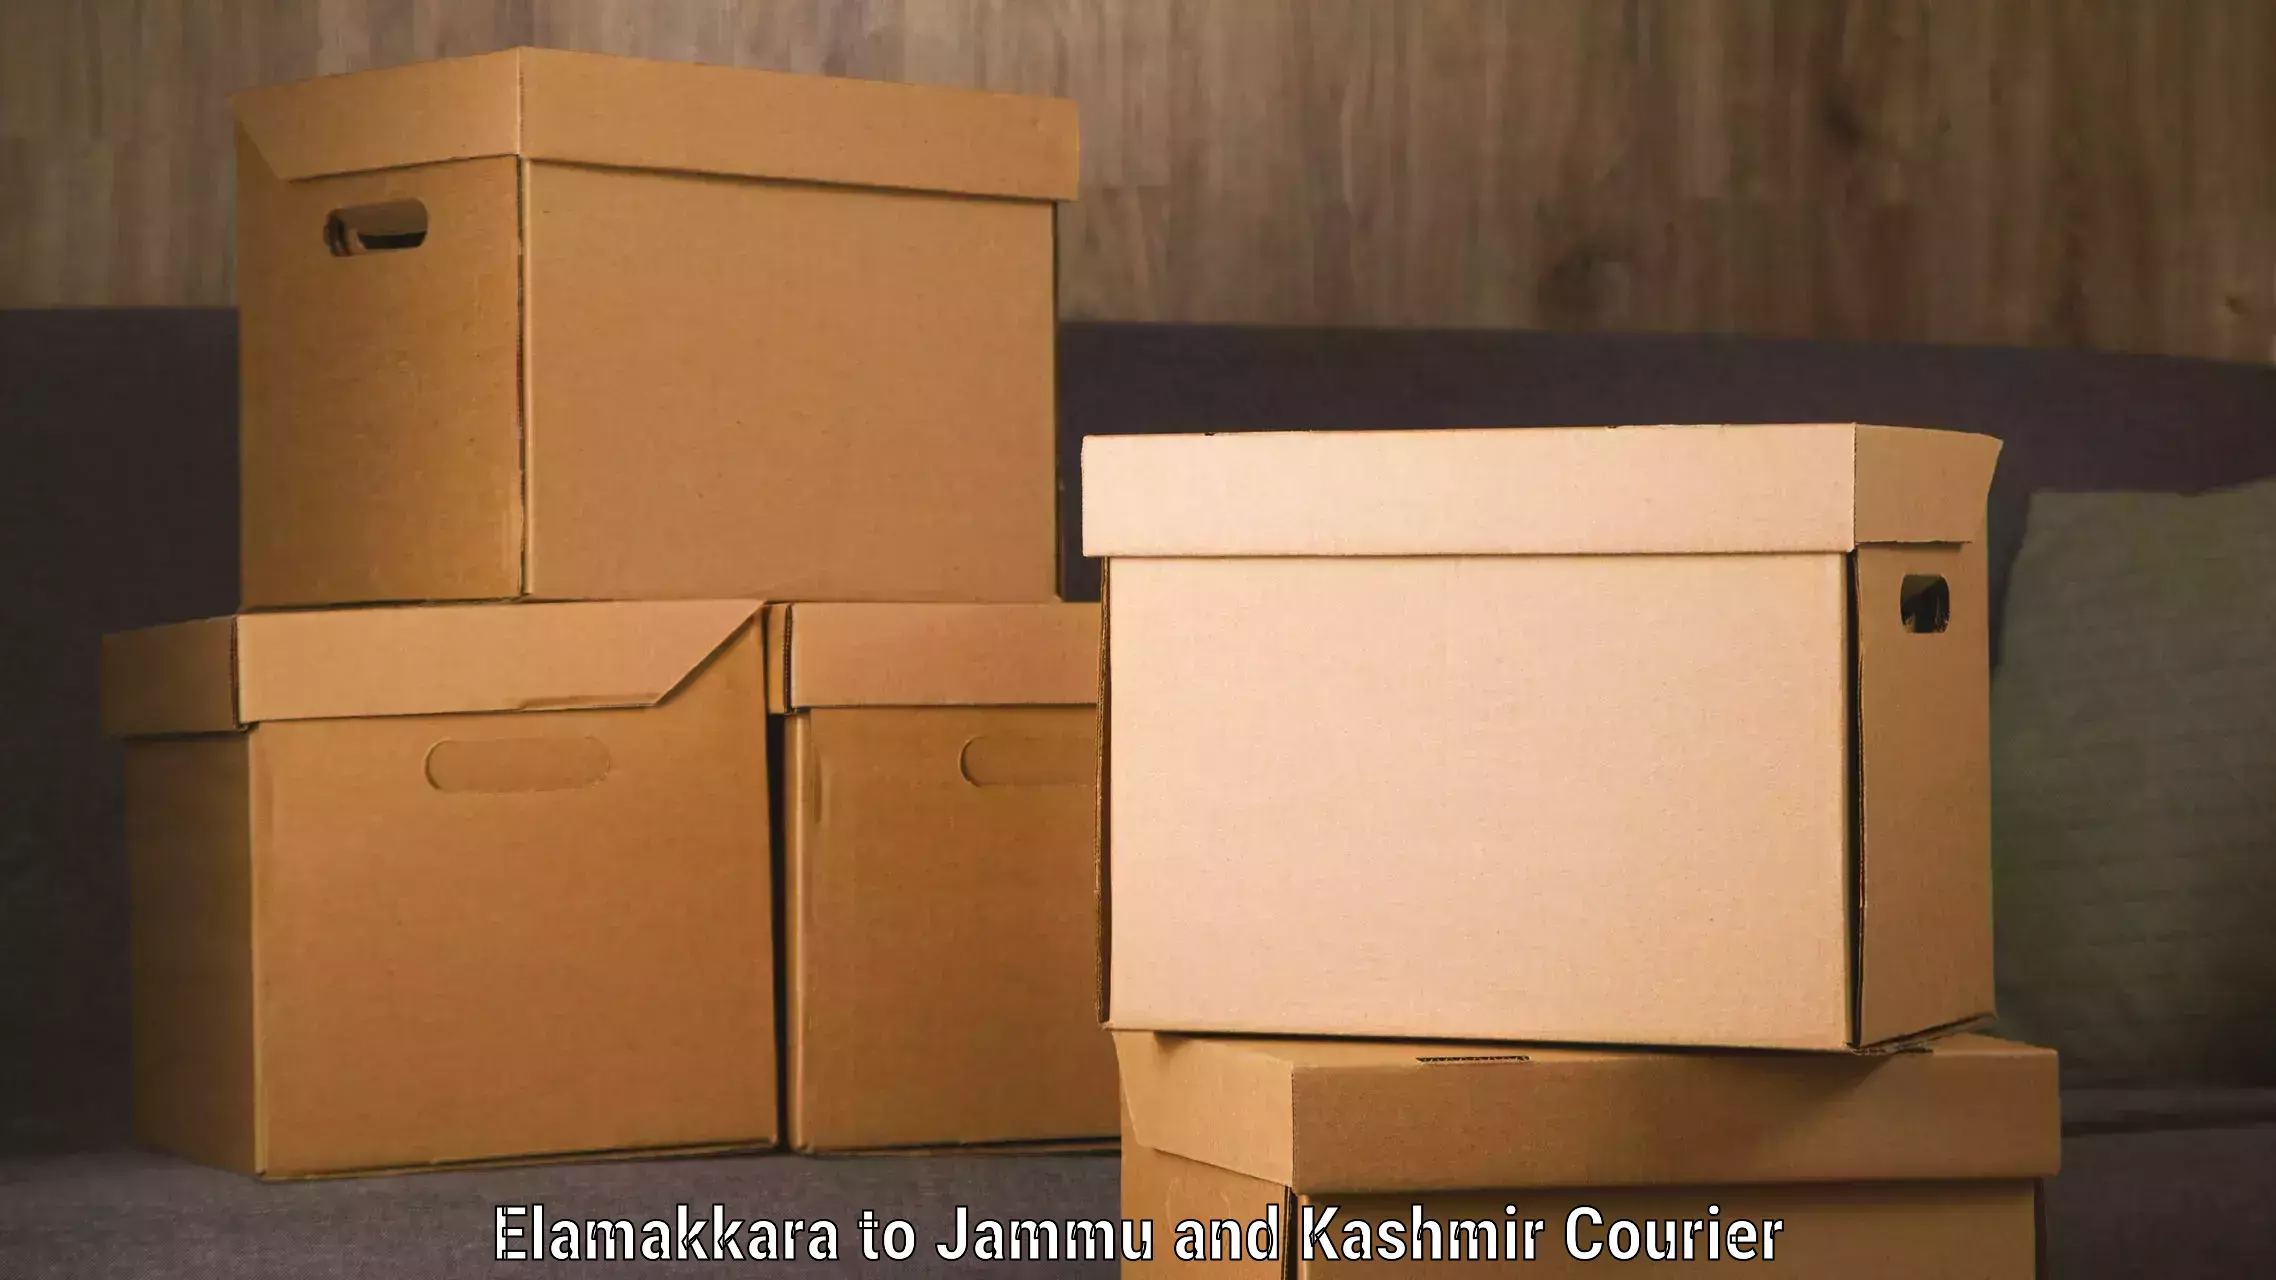 Multi-national courier services Elamakkara to Jammu and Kashmir